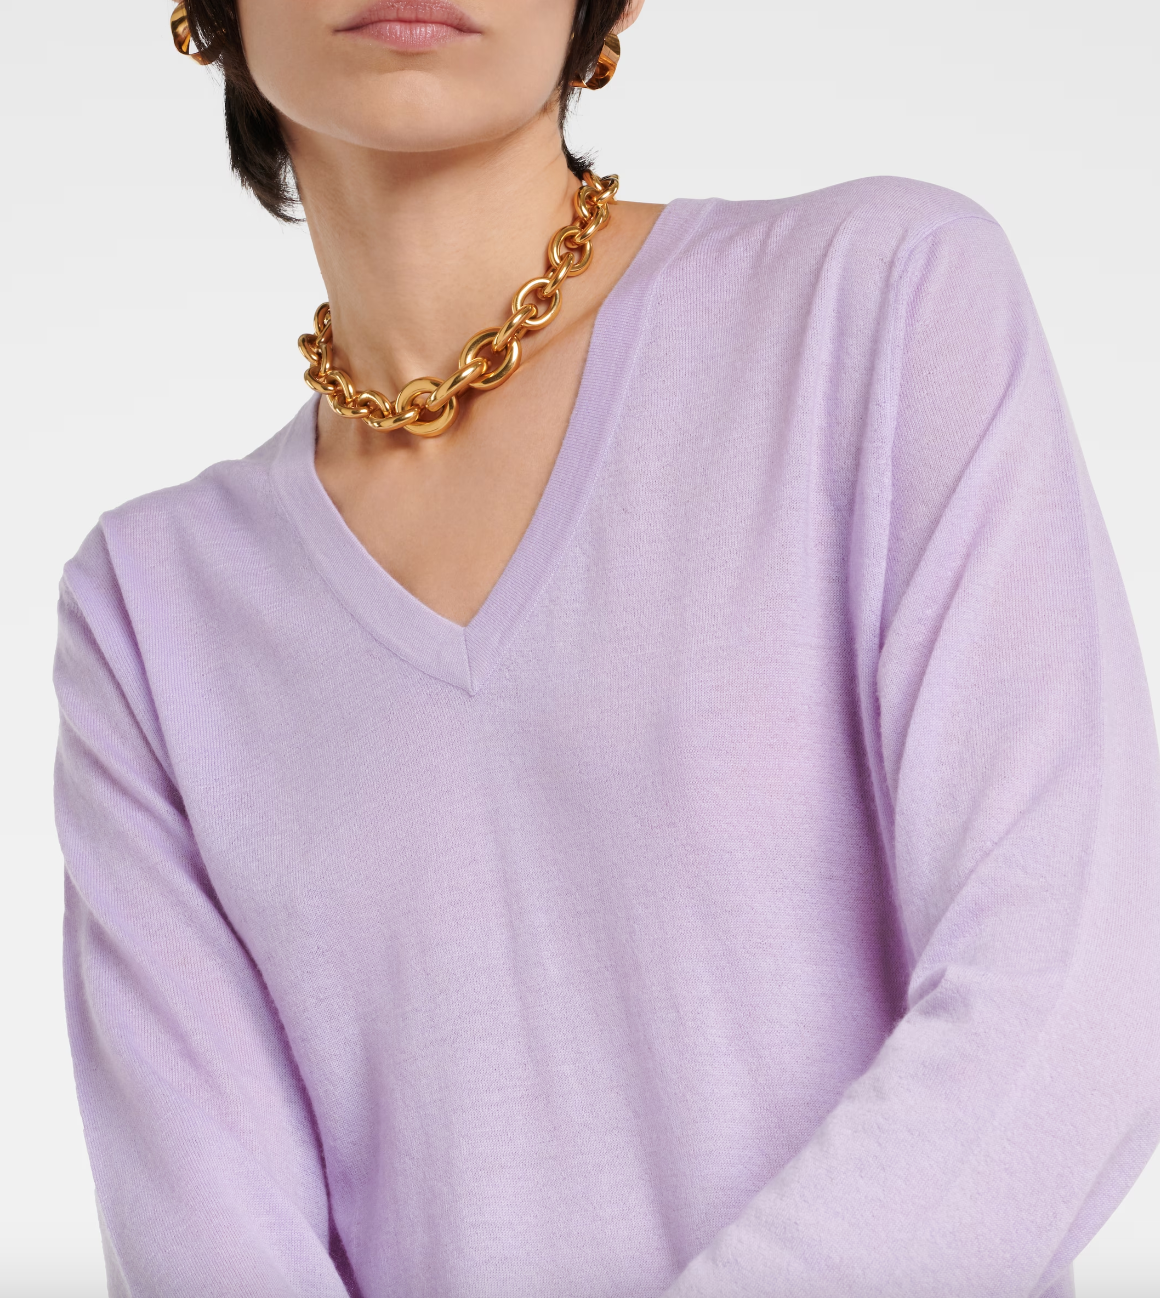 Lisa Yang Jane V neck Lightweight Cashmere Sweater